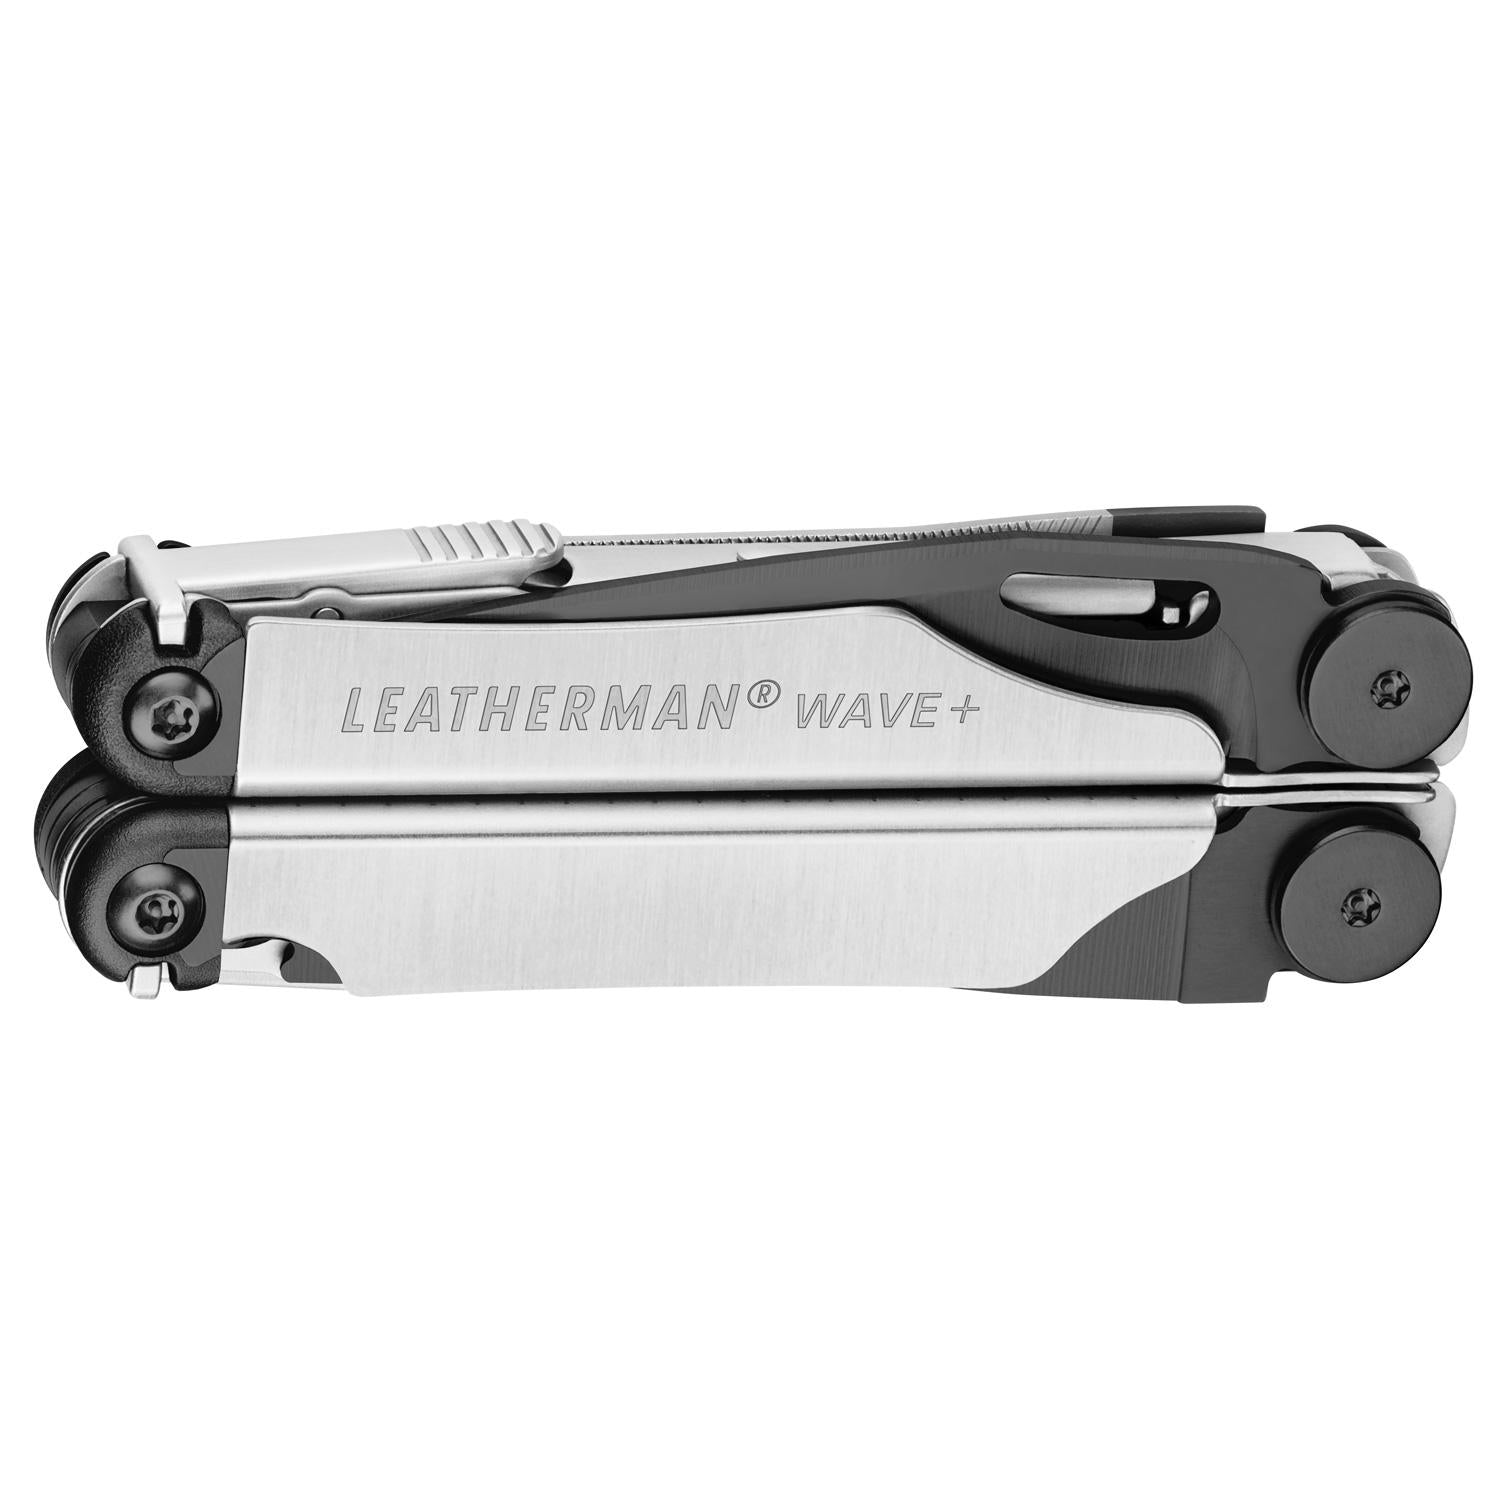 Leatherman LEA-005-077 Wave B&S Plus nuevo modelo Multiherramienta 18 herramientas, edición limitada